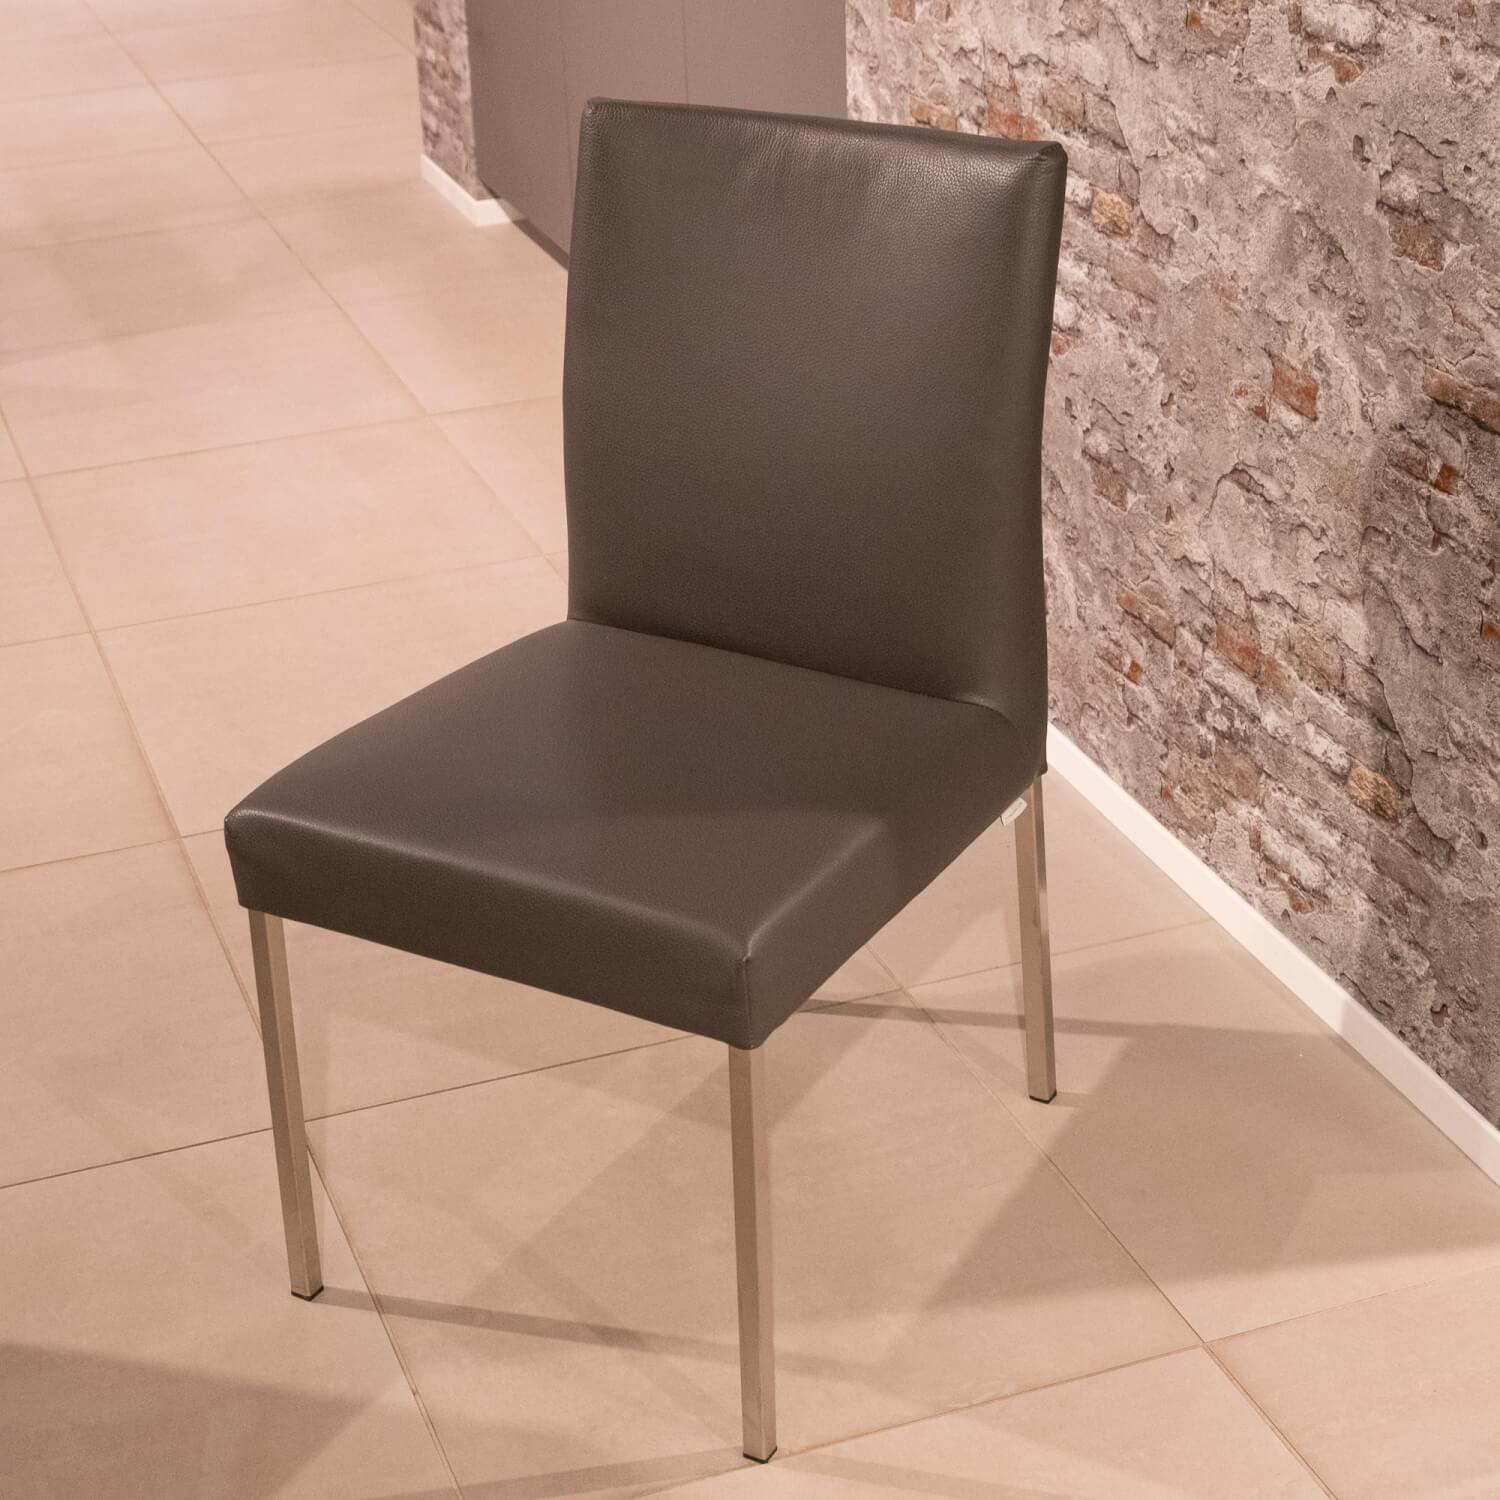 4-er Set Stuhl Pose -E Leder Tendens Farbe LD 1200 Graniet Gestell Edelstahl